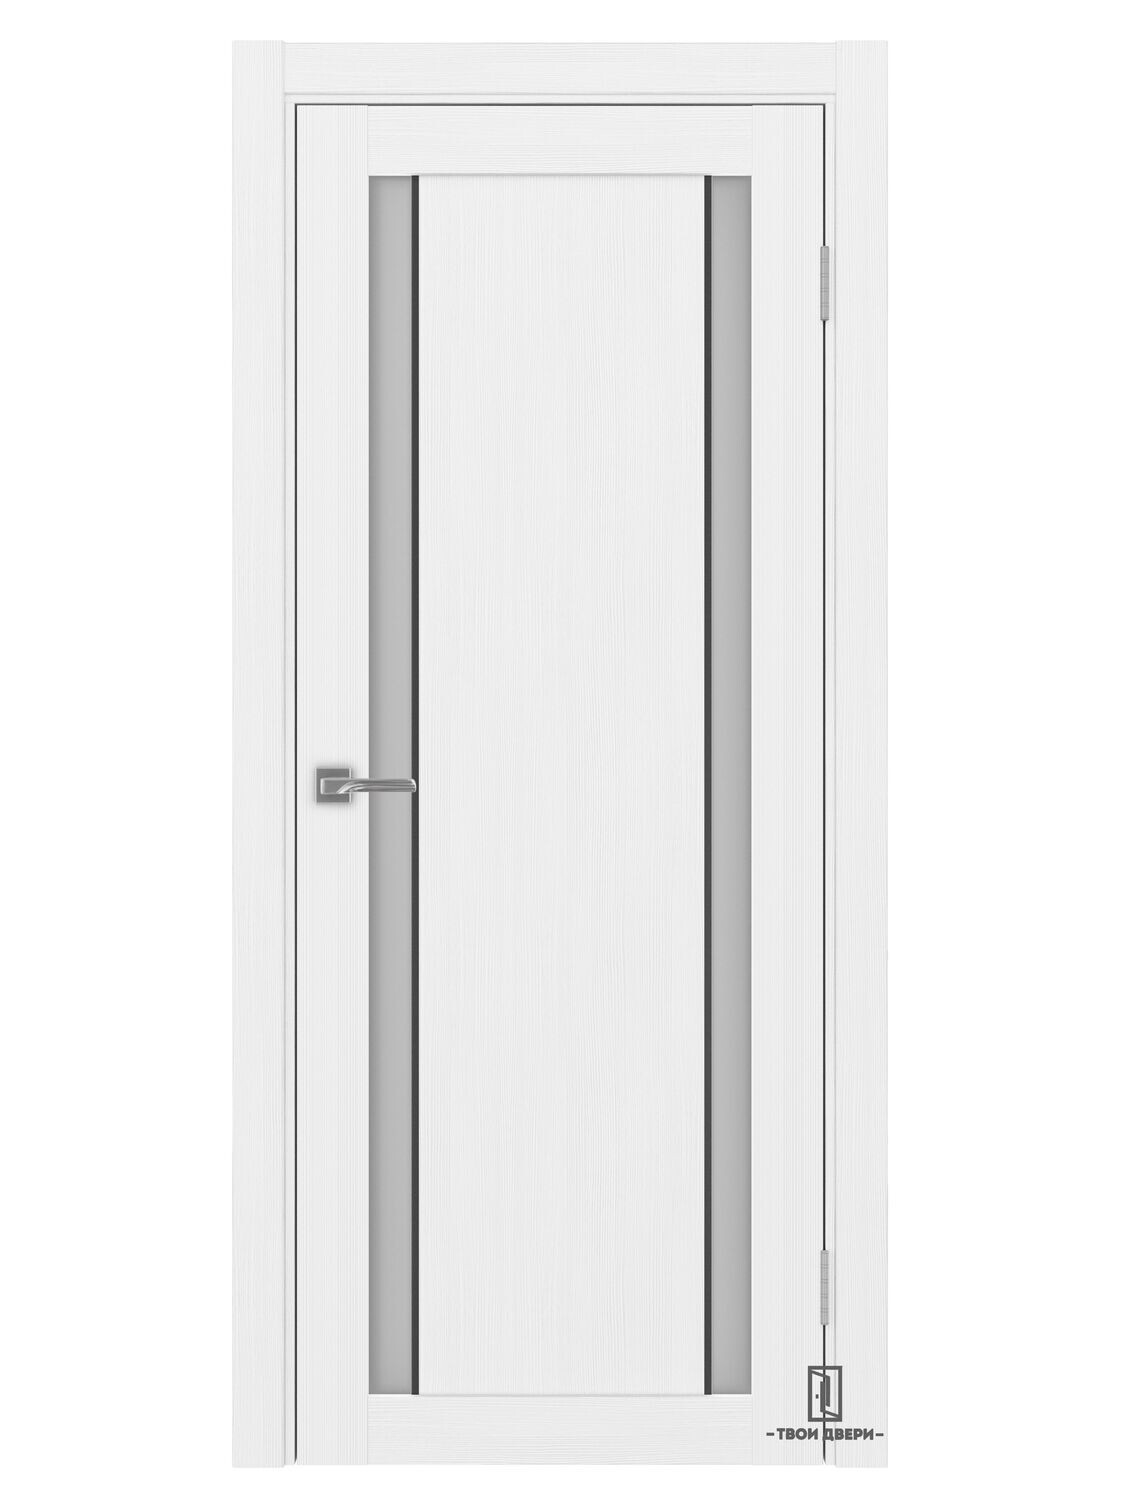 Дверь межкомнатная АПС 522.212 черный молдинг, белый лед